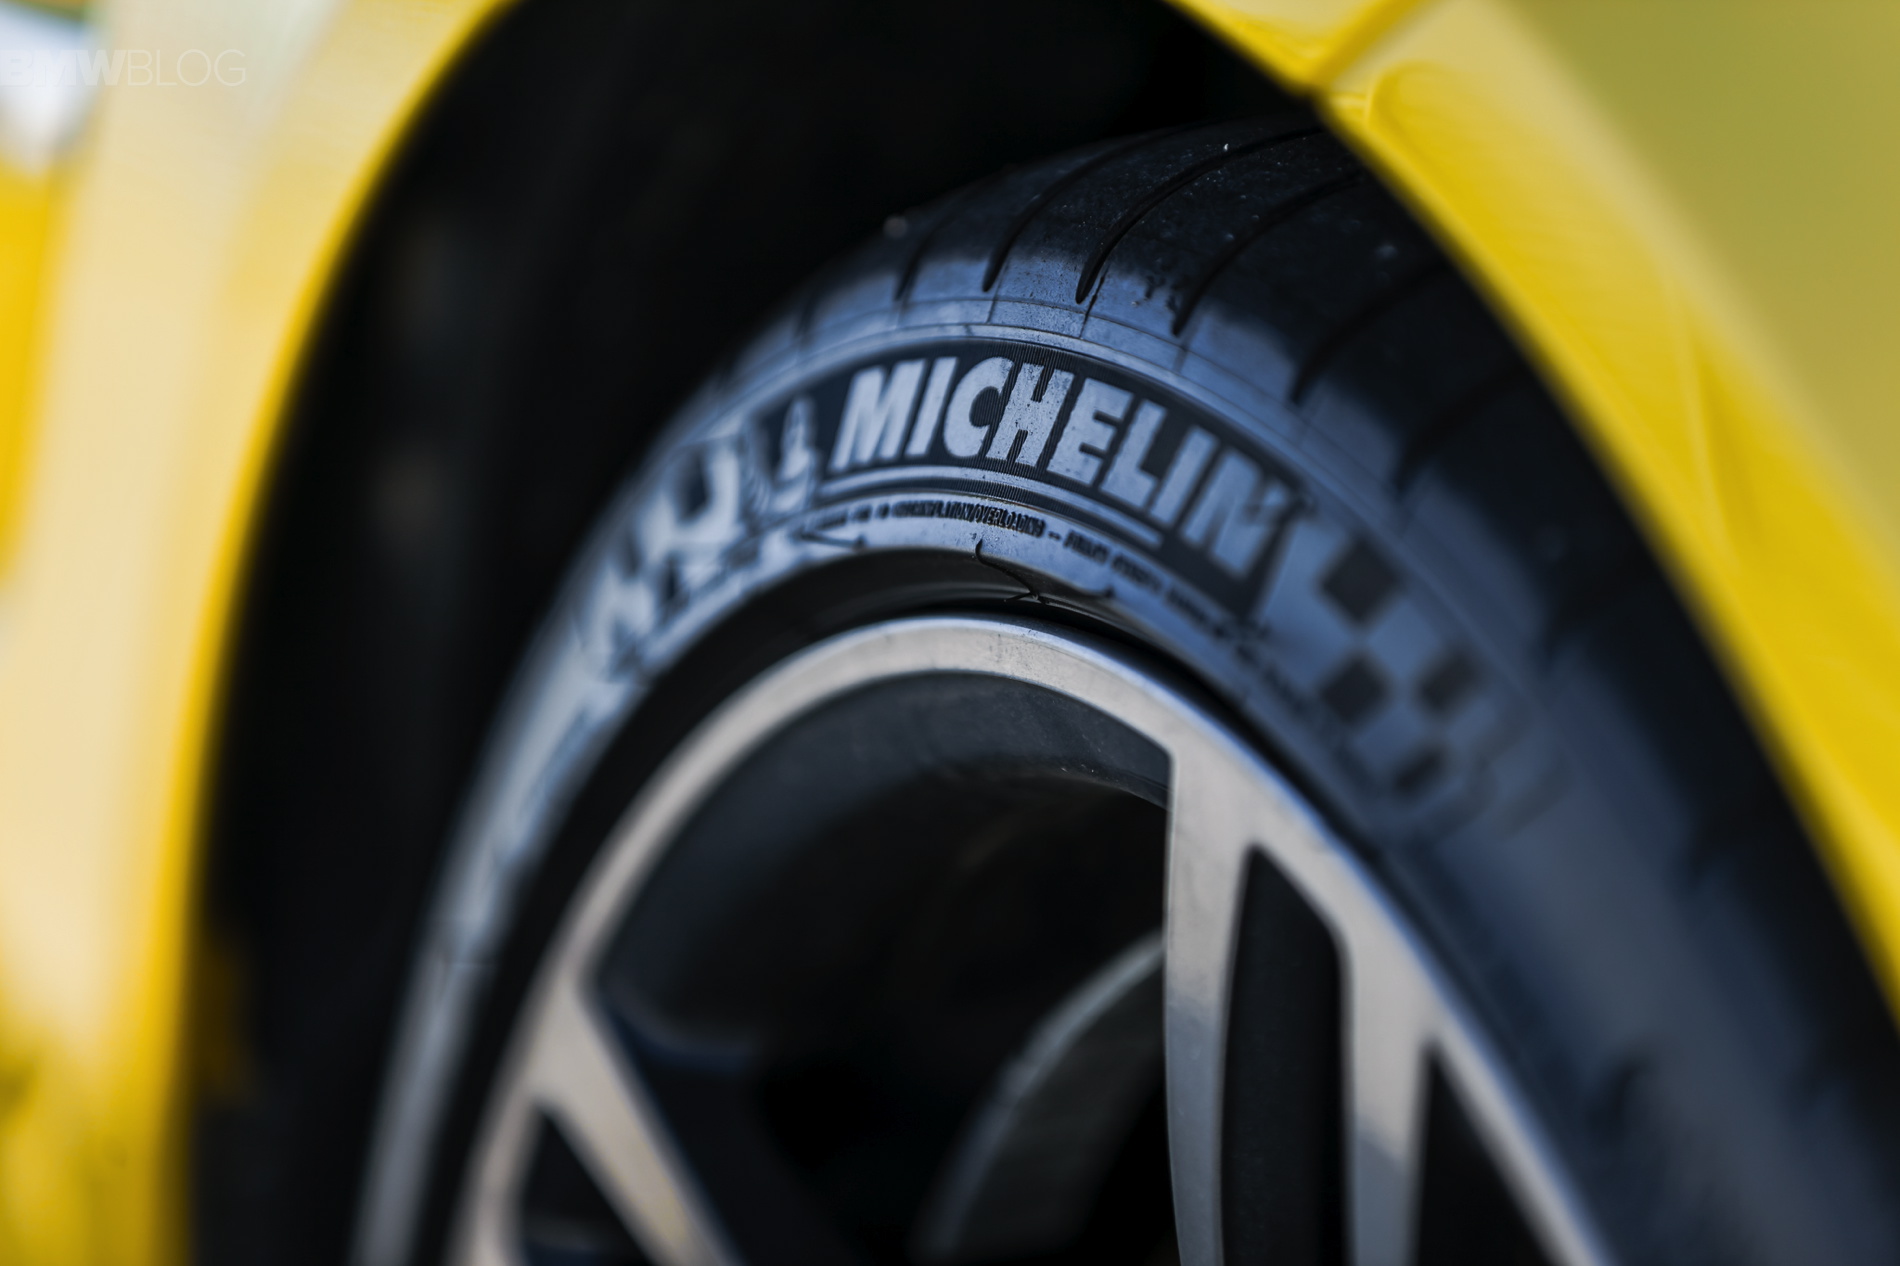  Michelin construirá fábrica de neumáticos en Guanajuato